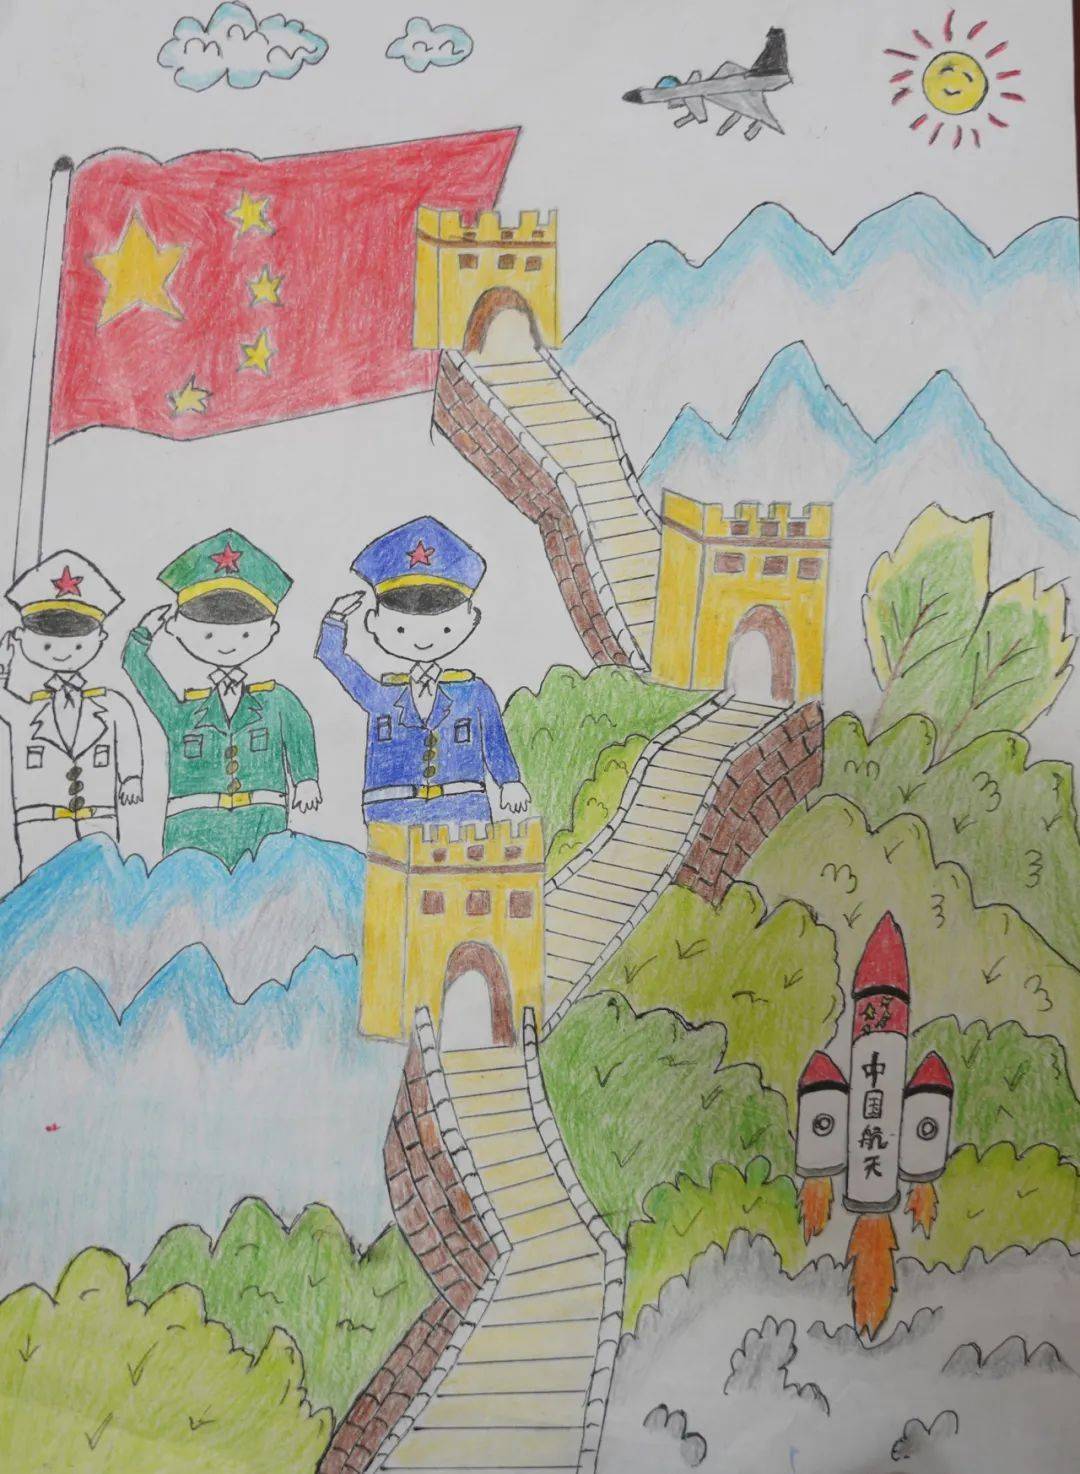 一笔一画描绘壮美山河一字一句写满崇敬关怀近日,新疆某部官兵收到了